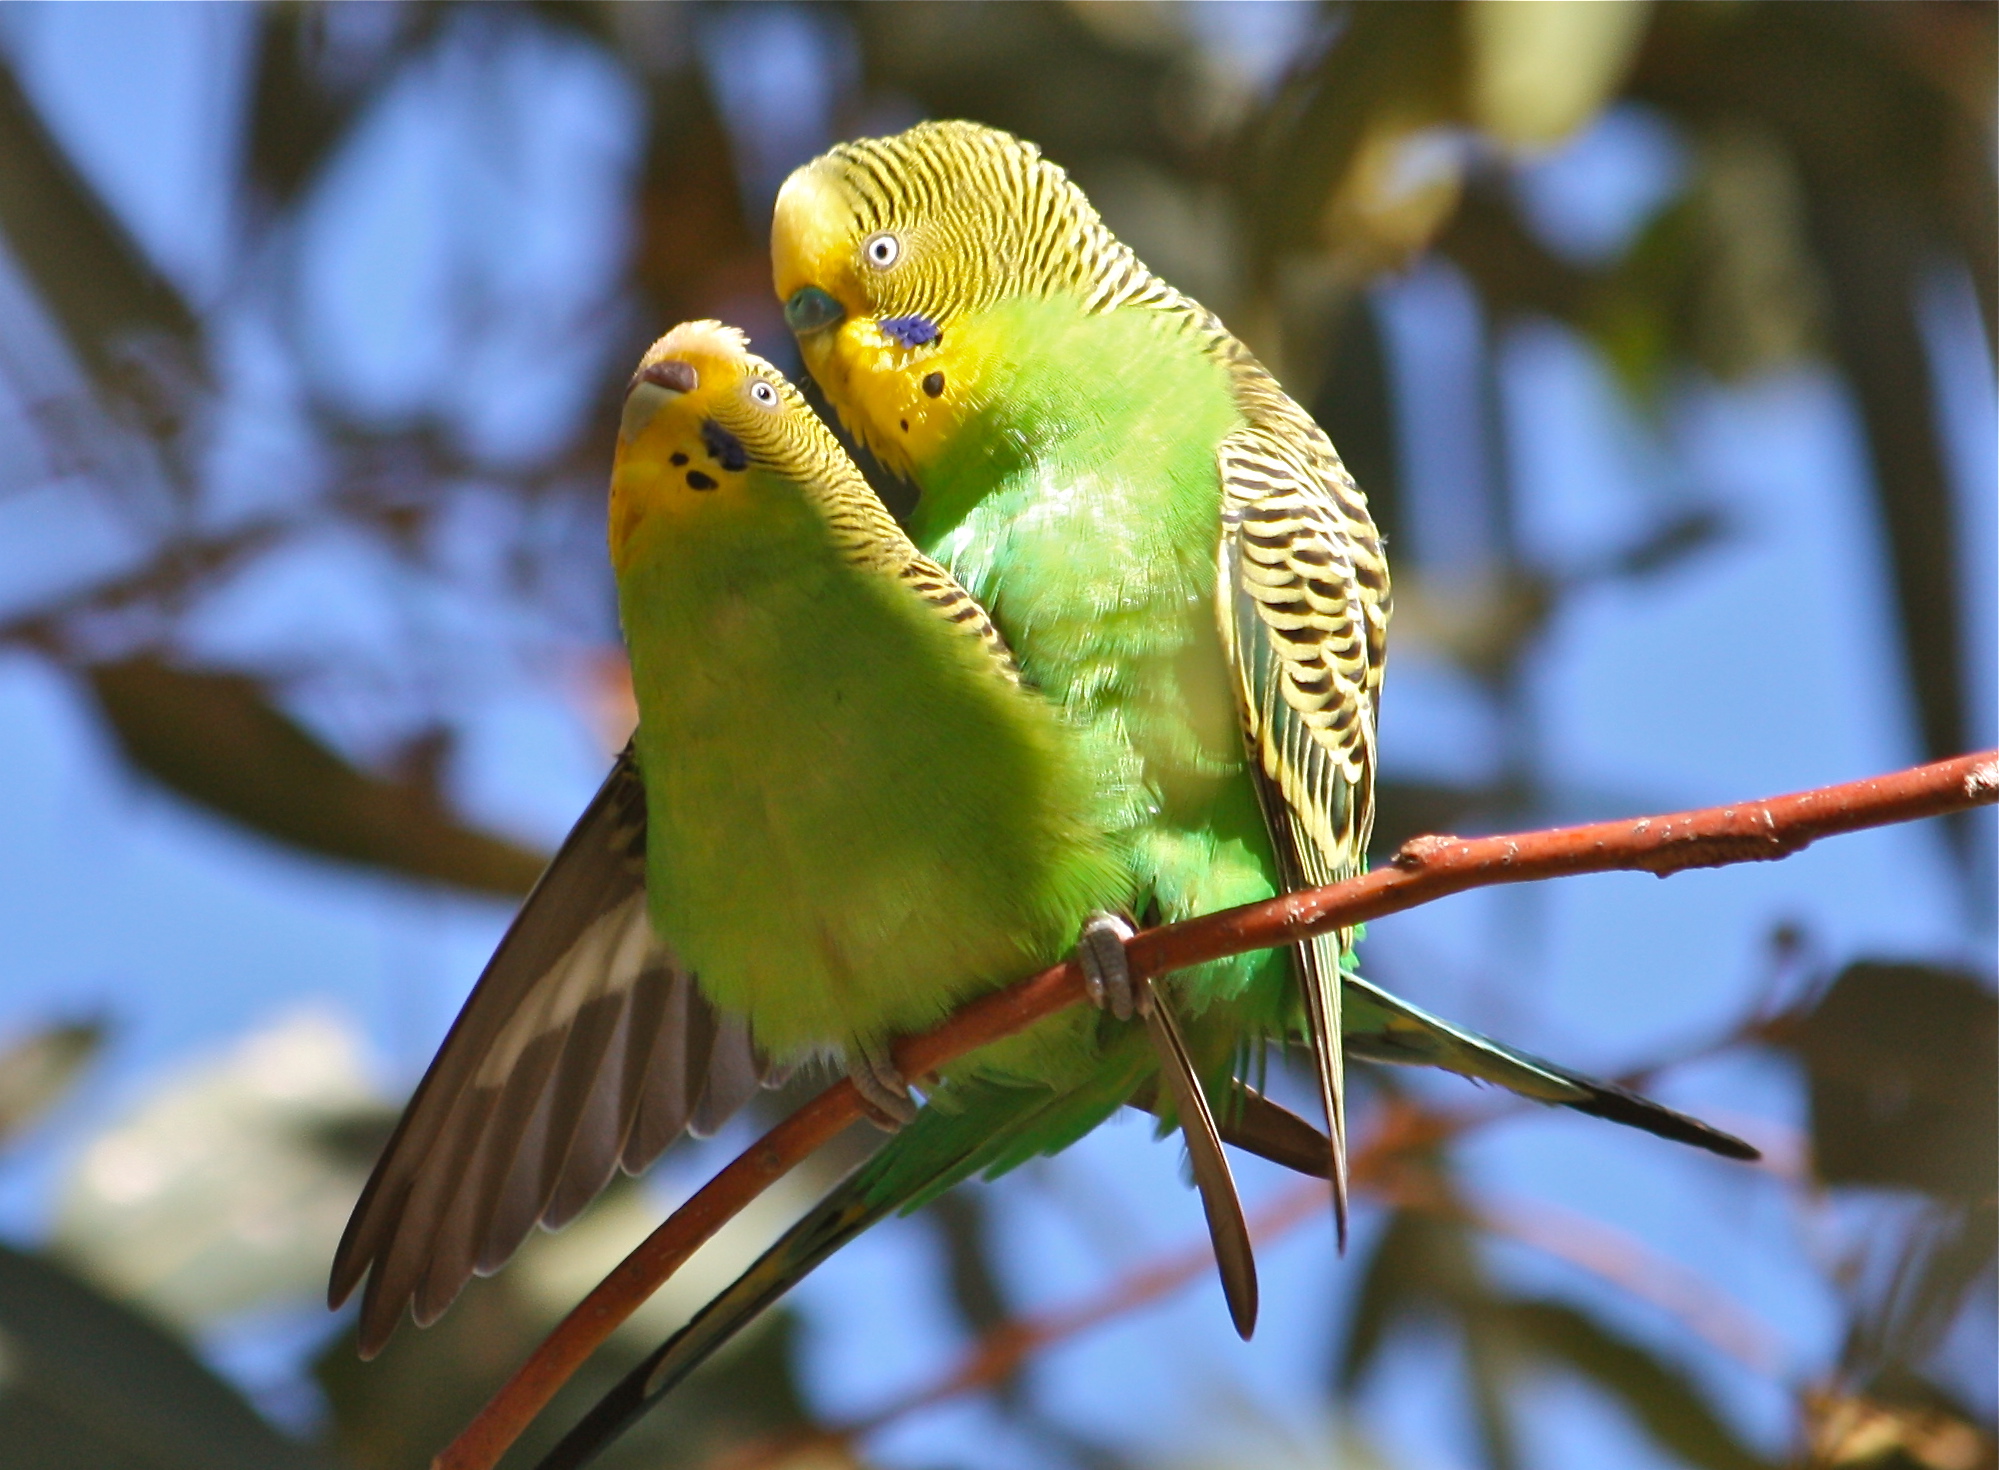 Разведение волнистых попугаев: как спариваются и размножаются птицы в домашних условиях